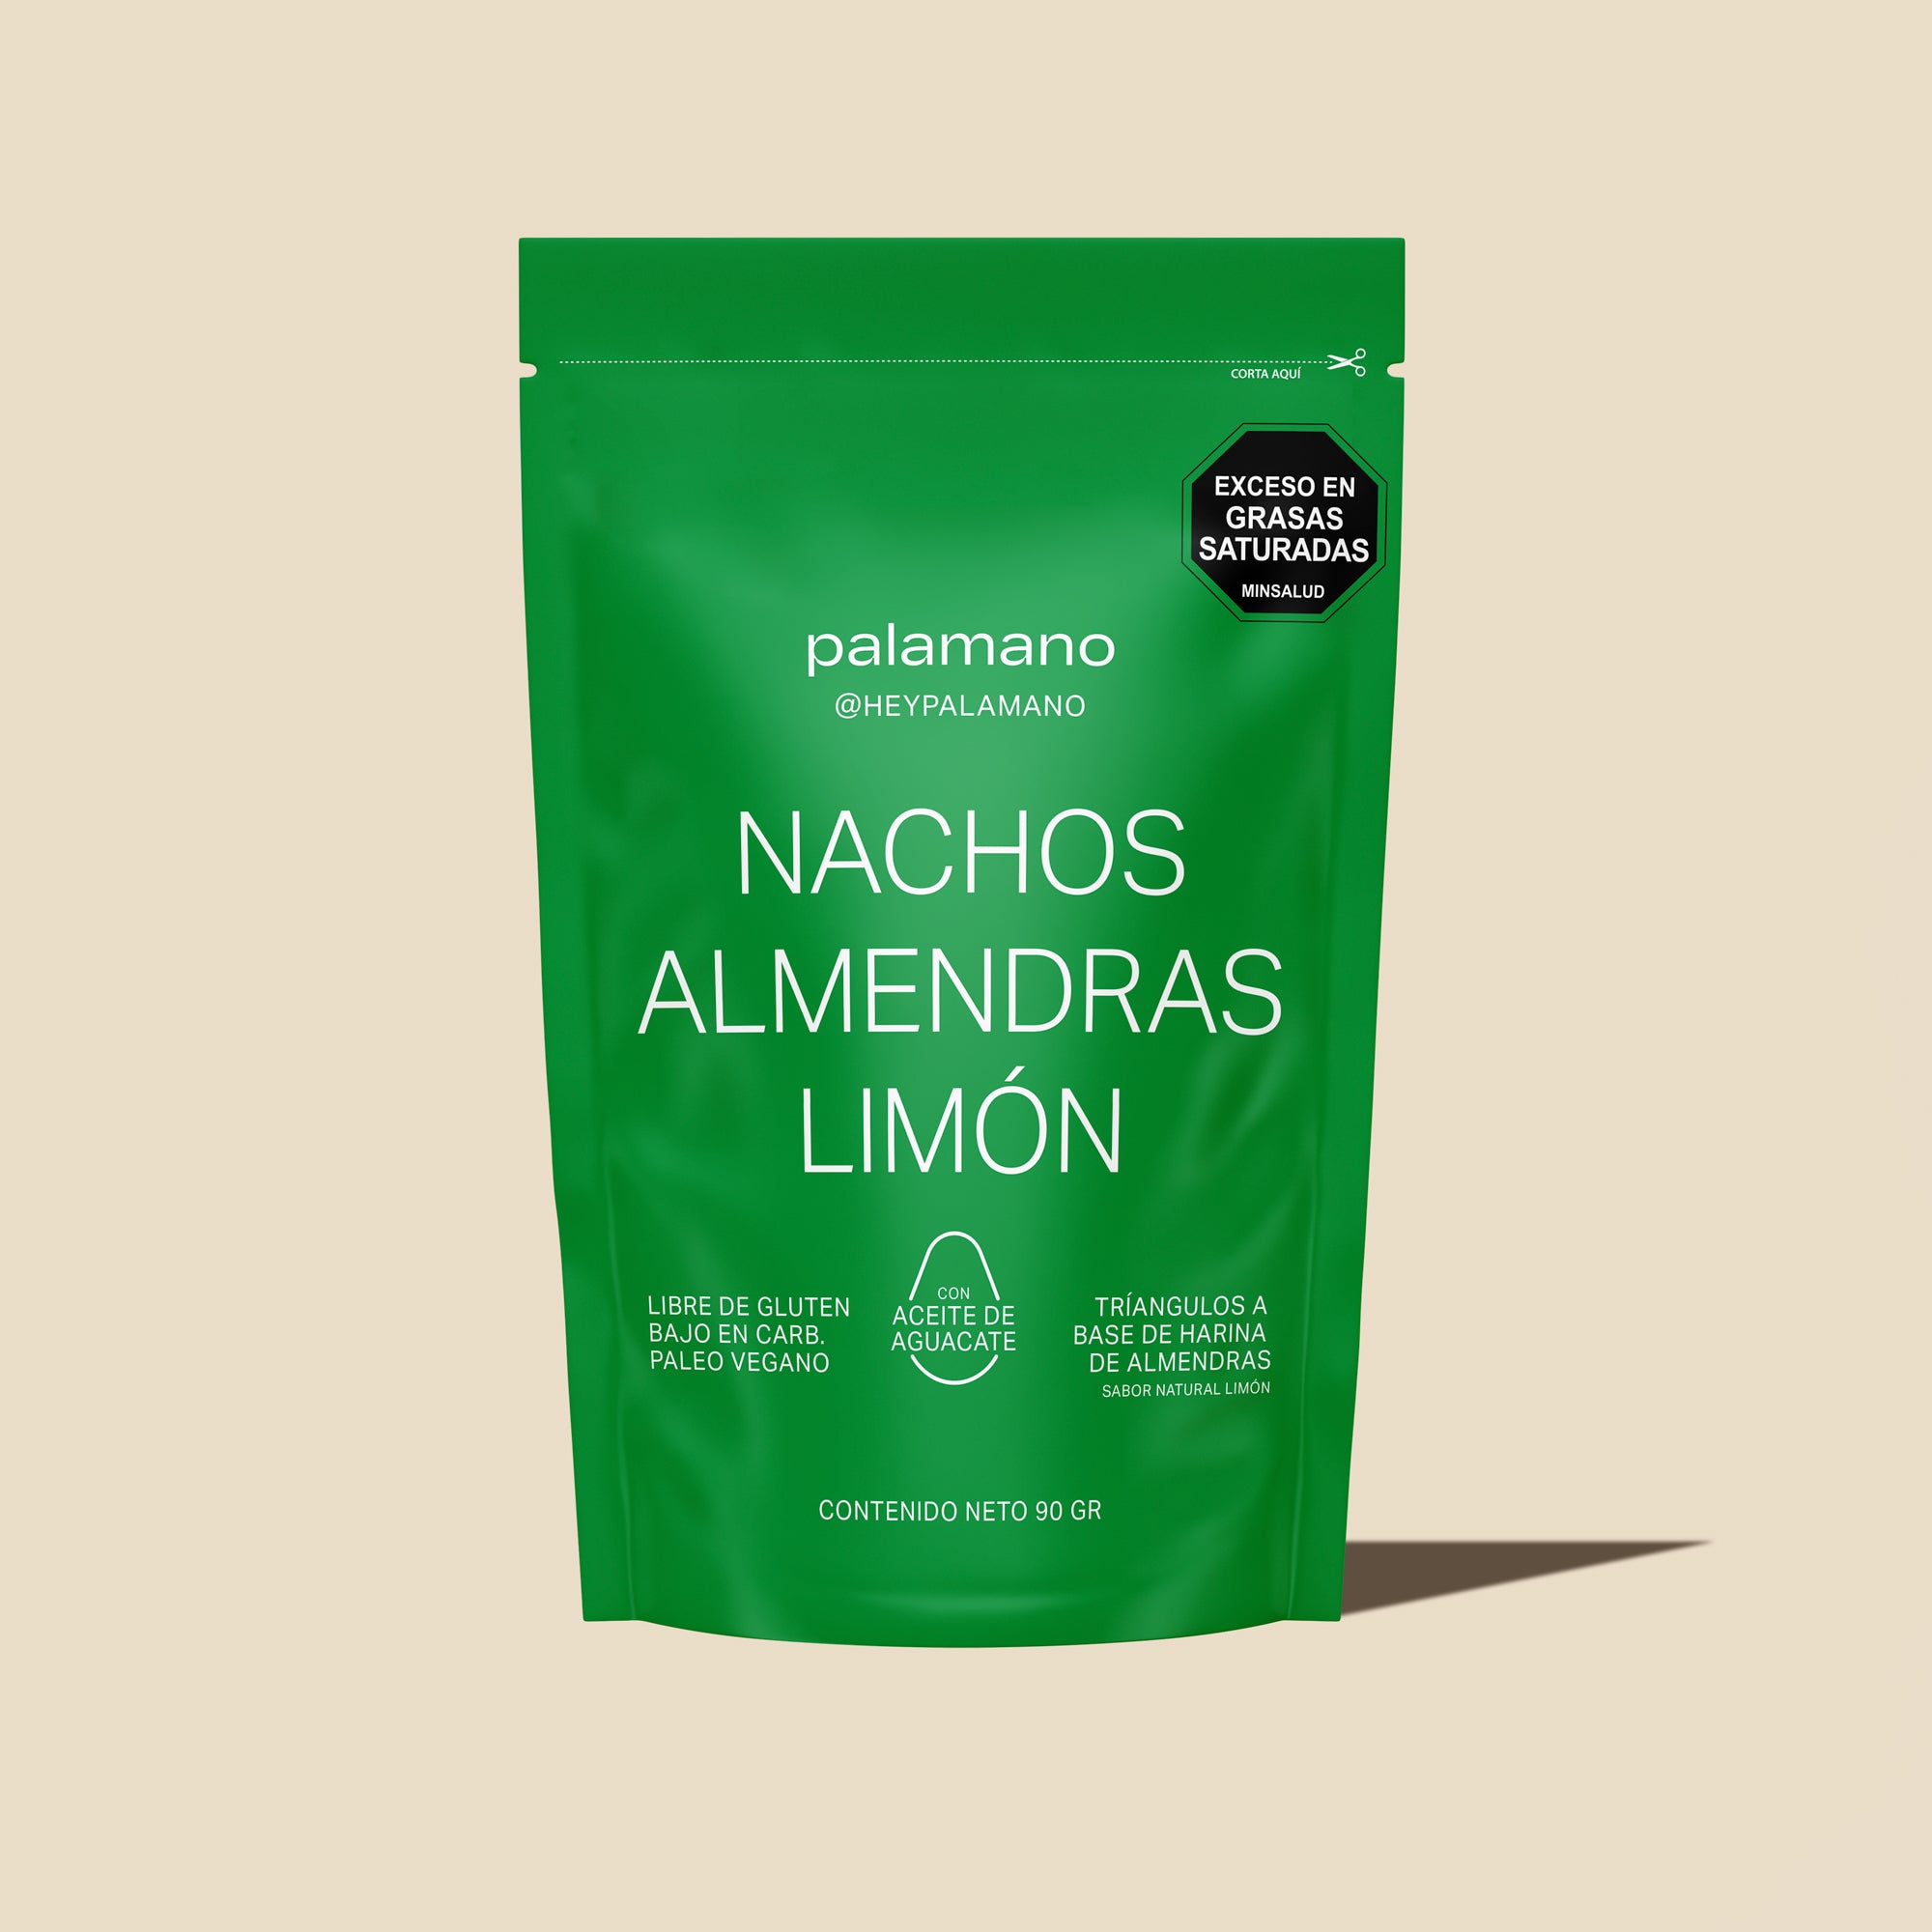 Nachos Almendras Limon